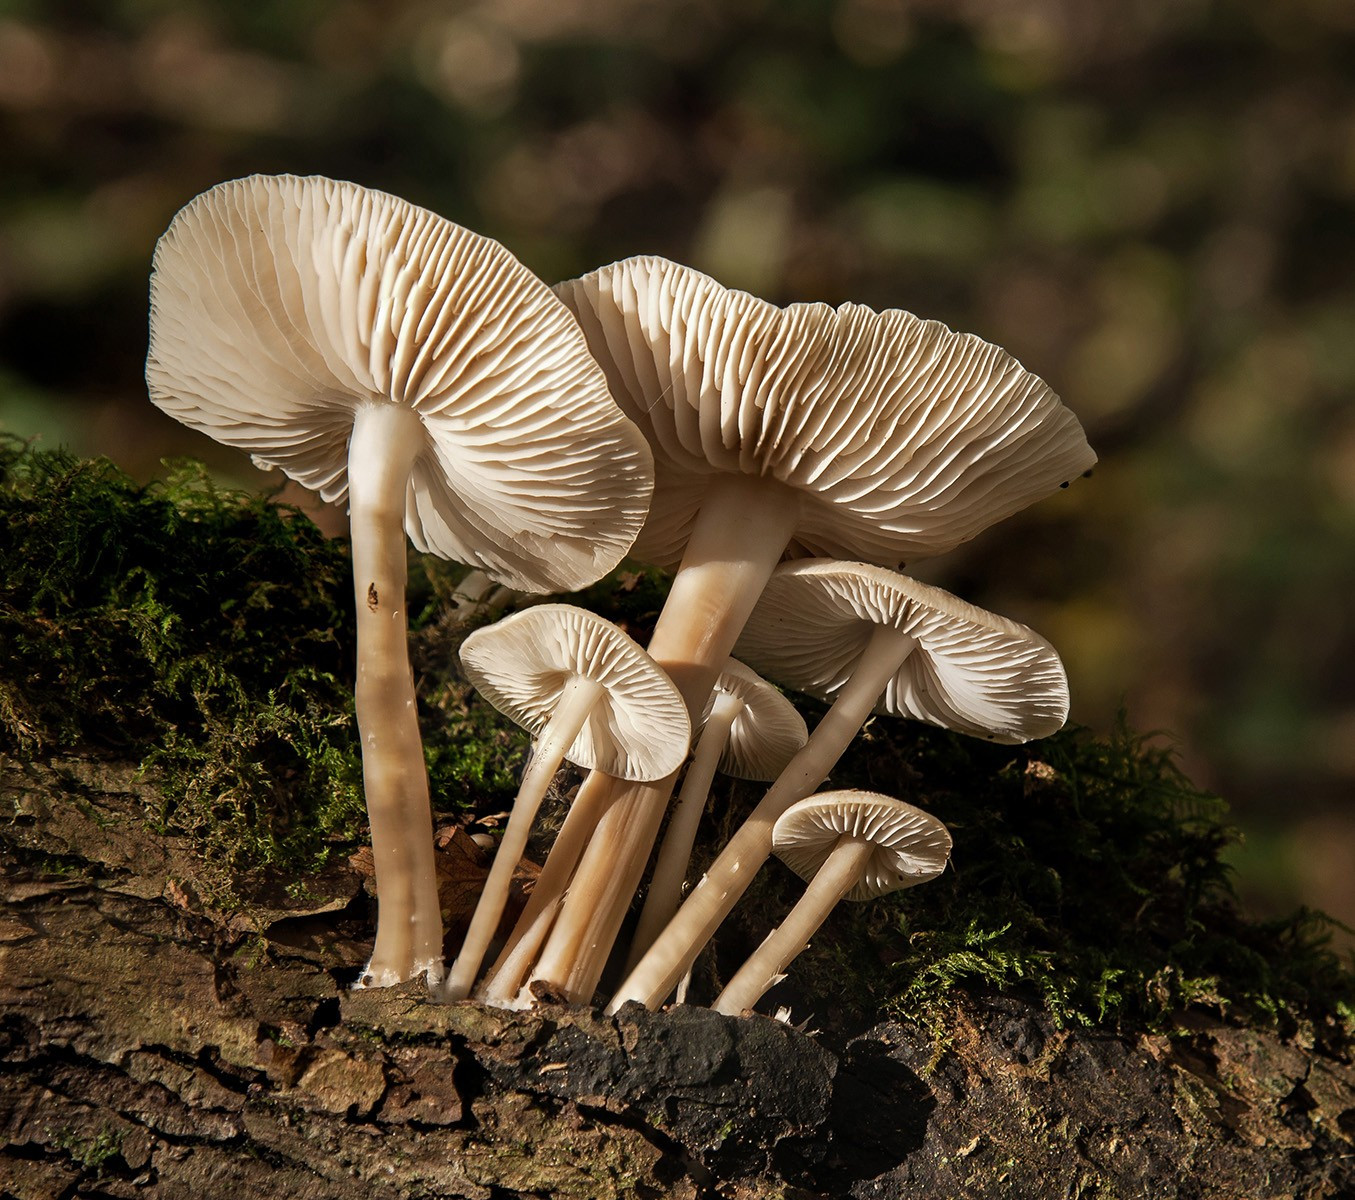 22. Common Bonnet Fungus.